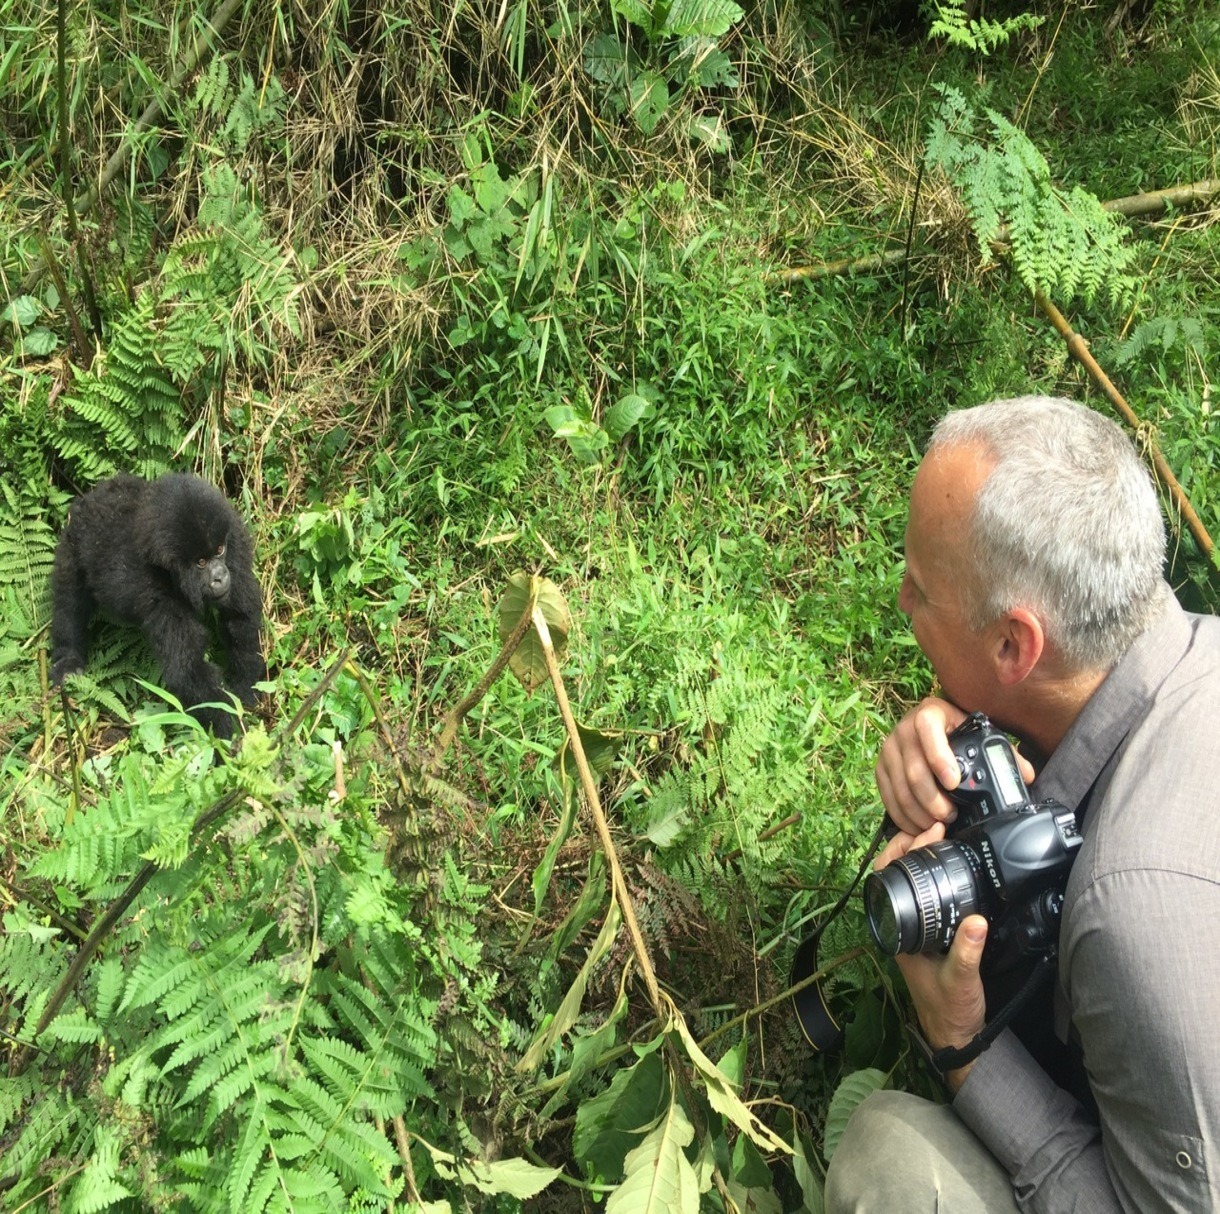 Joe Gaydos visiting with a mountain gorilla.